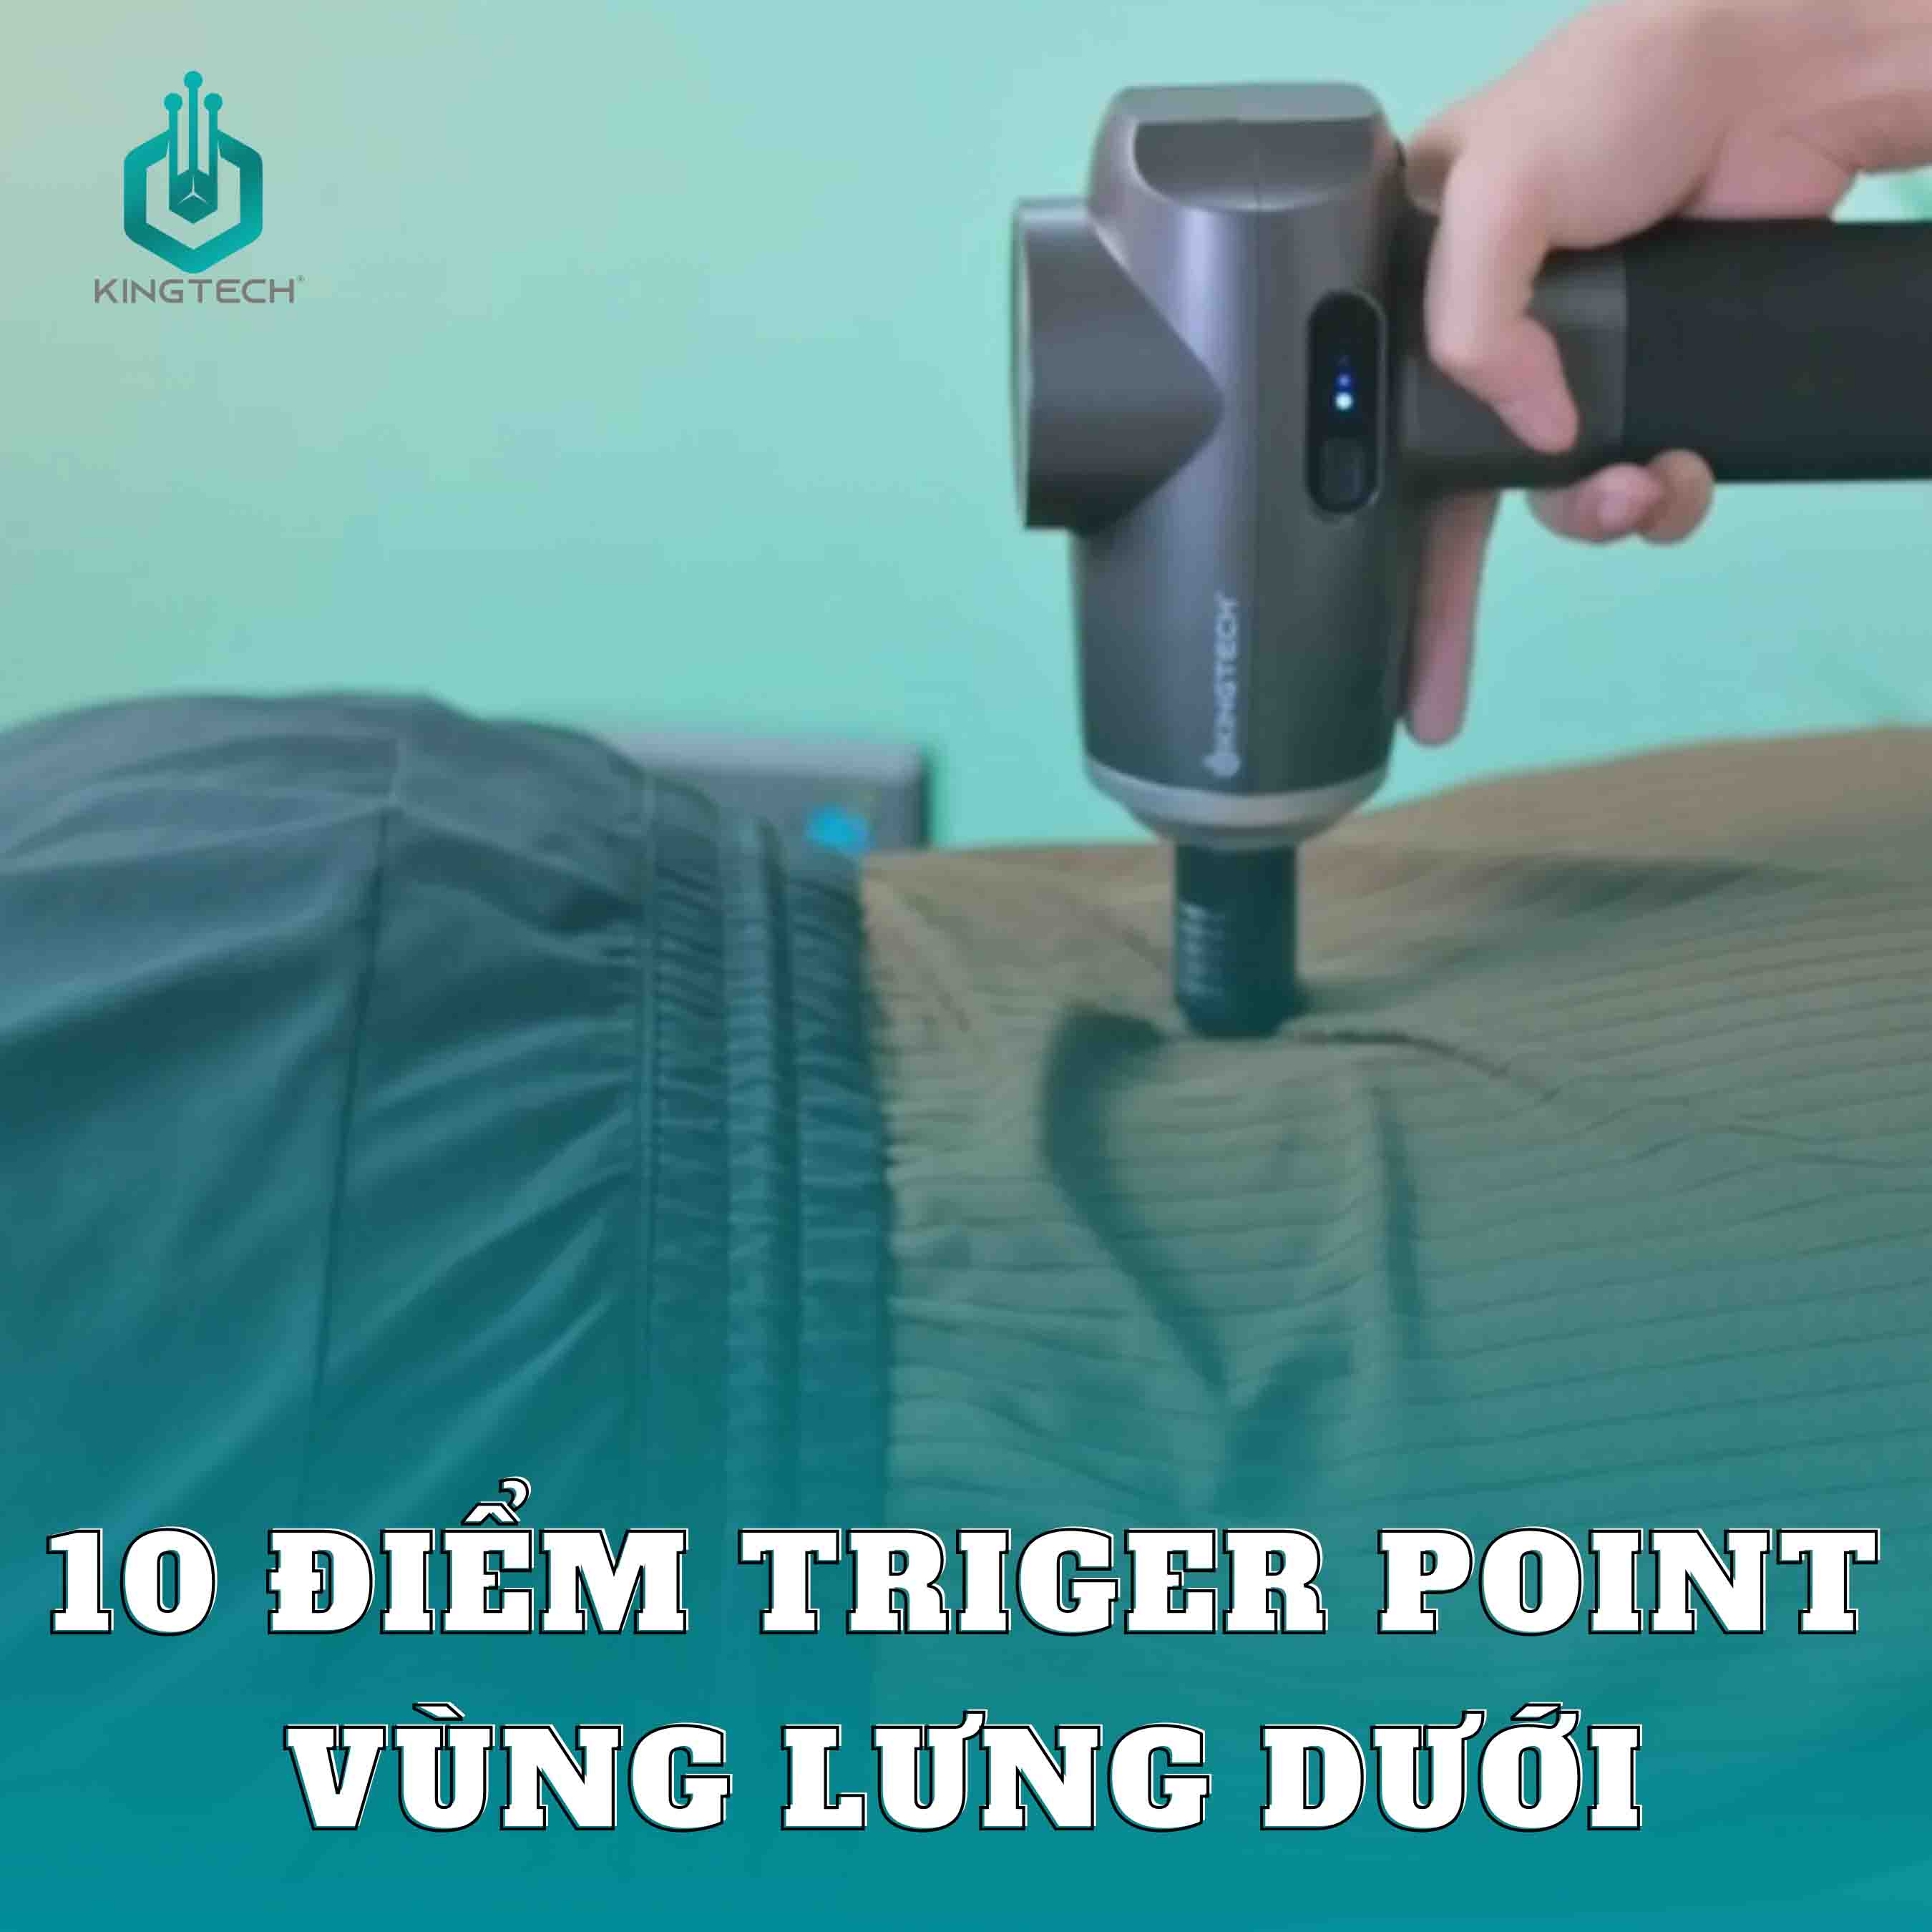 Cải thiện đau lưng dưới bằng 10 điểm Trigger Point